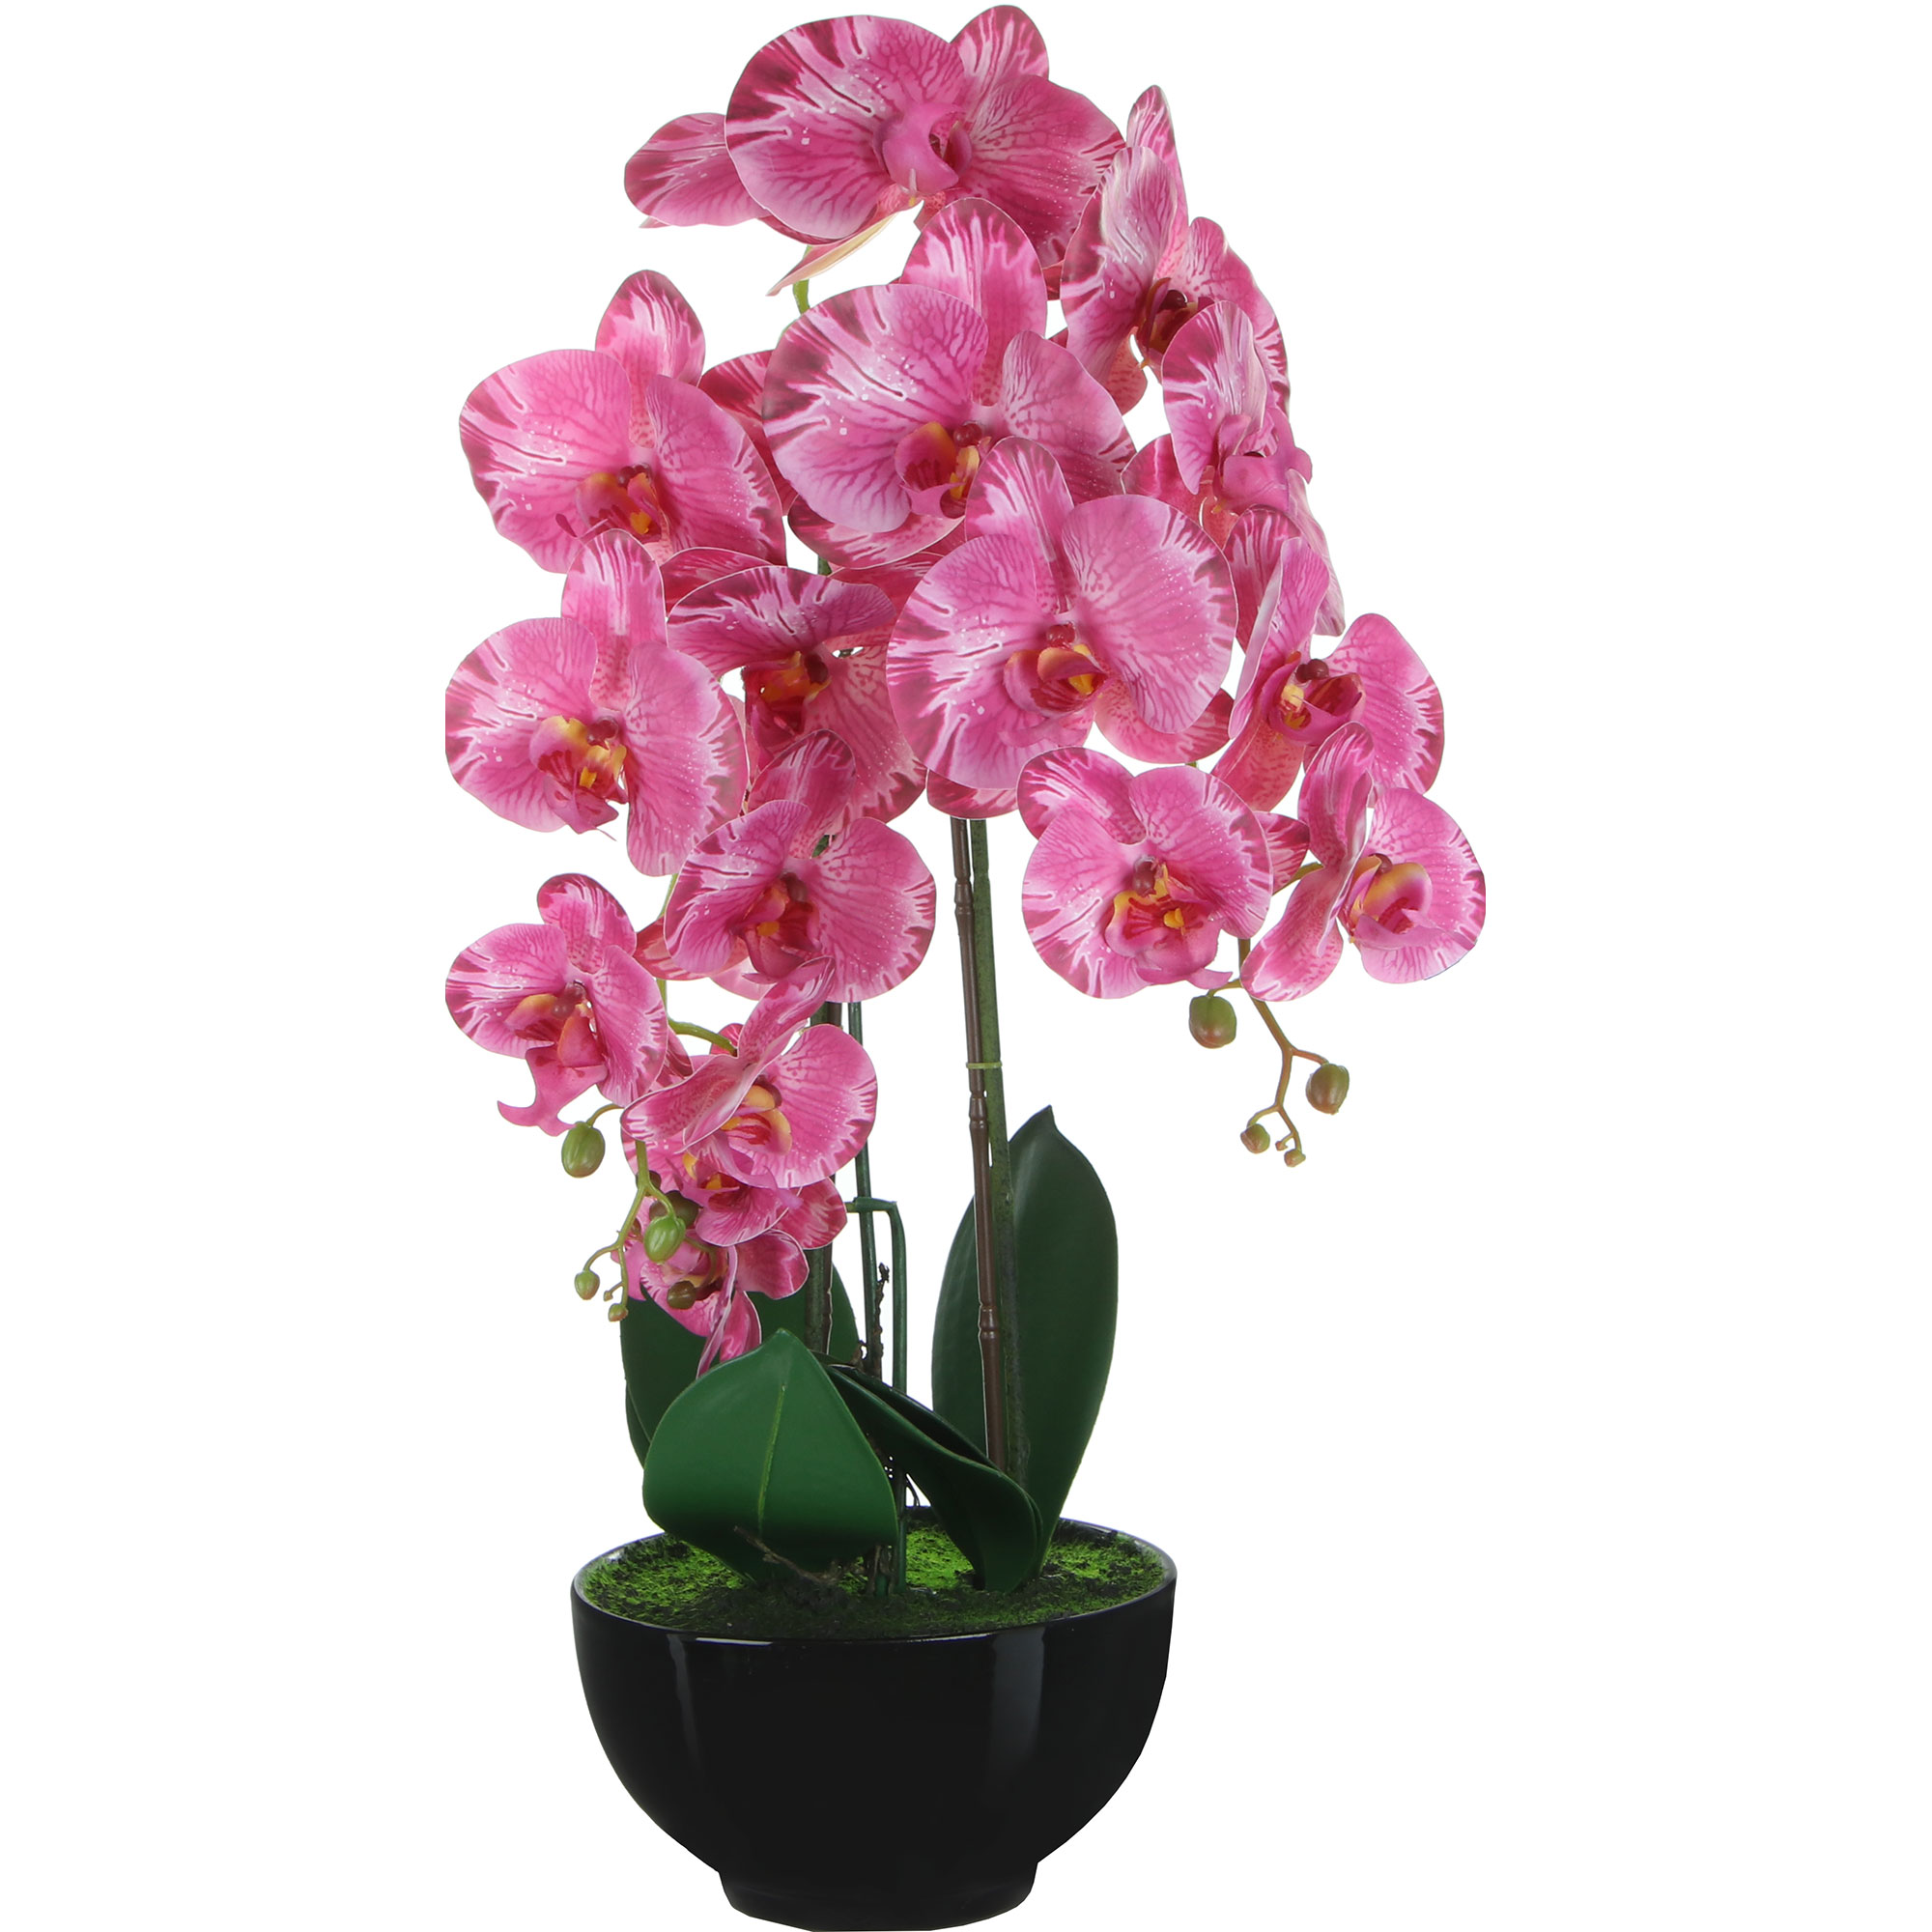 Цветок искусственный в горшке Fuzhou Light орхидея бордово-розовая, 4 цвета 62 см